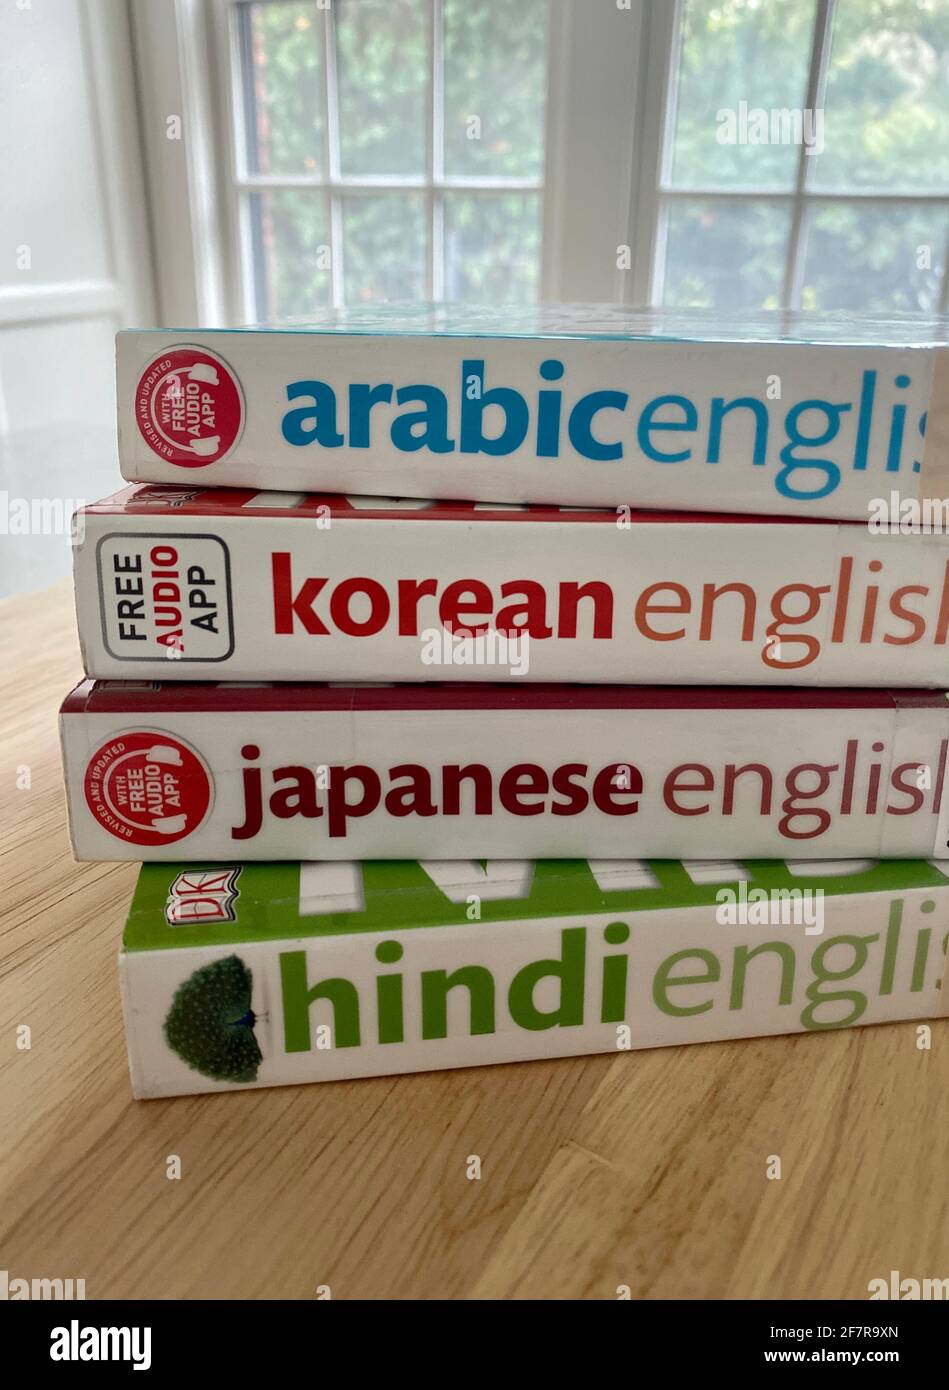 Ein Stapel zweisprachiger Phrasenbücher und Wörterbücher - Arabisch, Koreanisch, Japanisch und Hindi - aus der Bibliothek ausgeliehen. Stockfoto